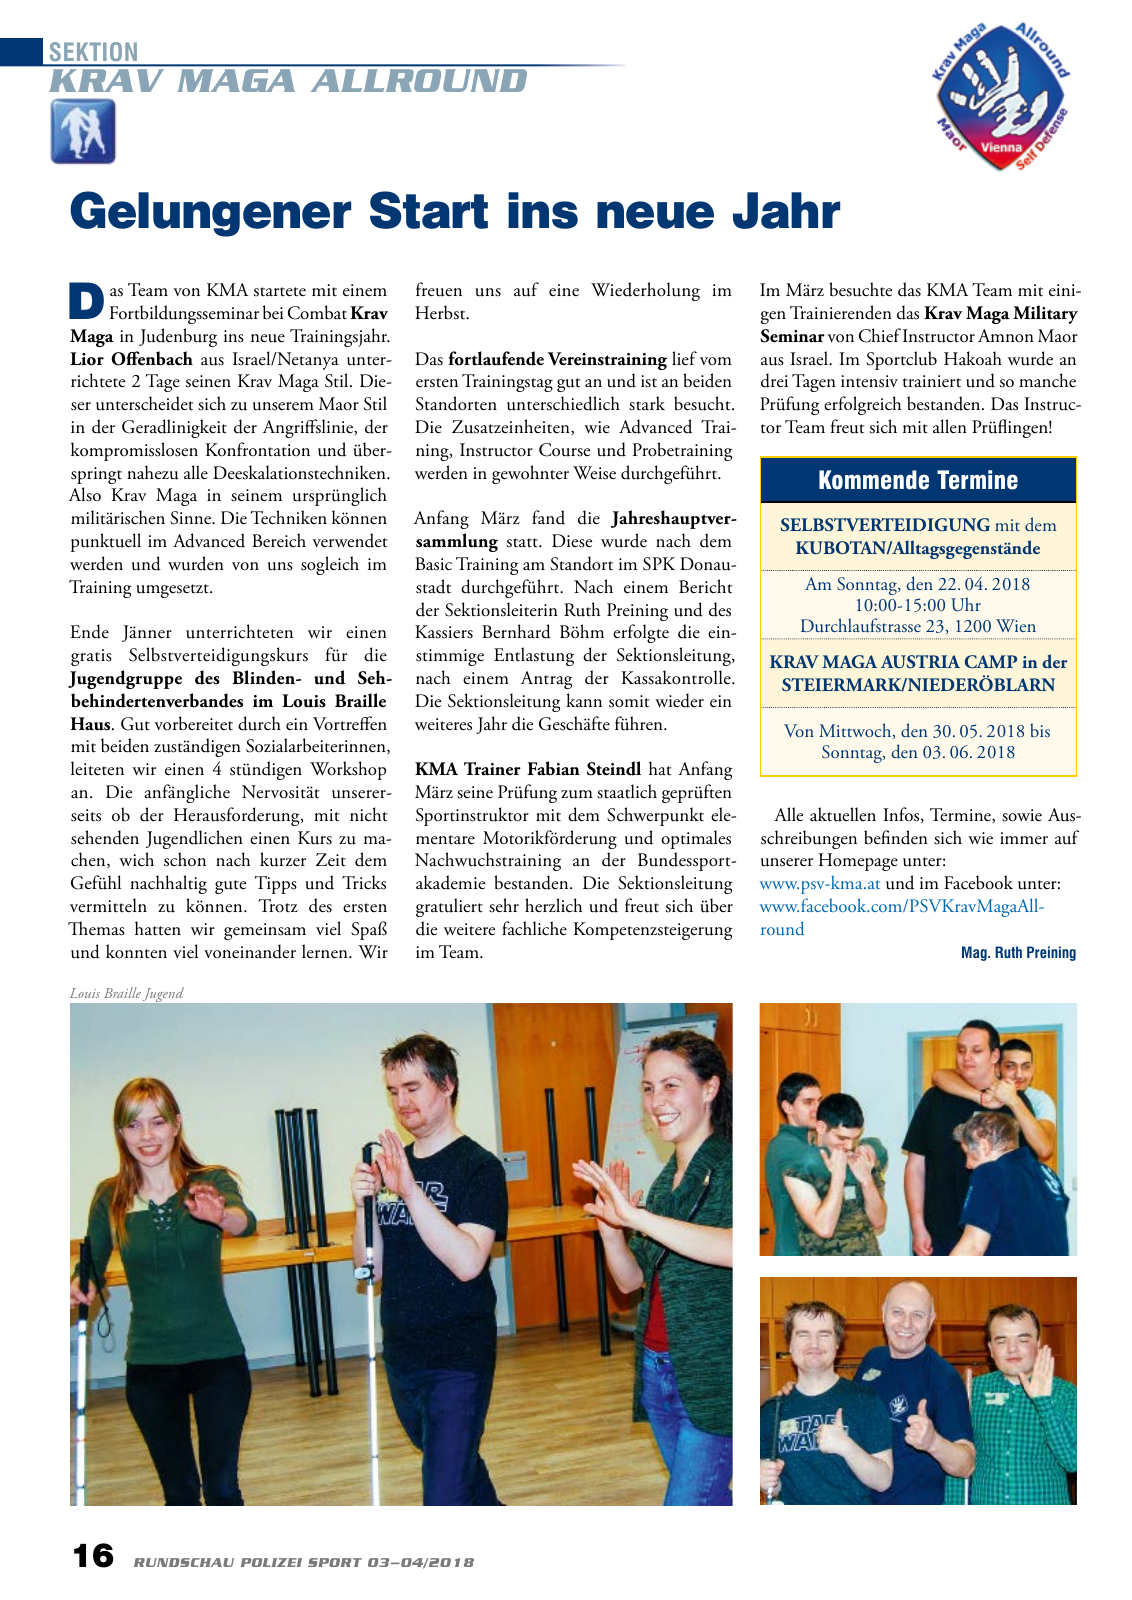 Vorschau Rundschau Polizei Sport 03-04/2018 Seite 16